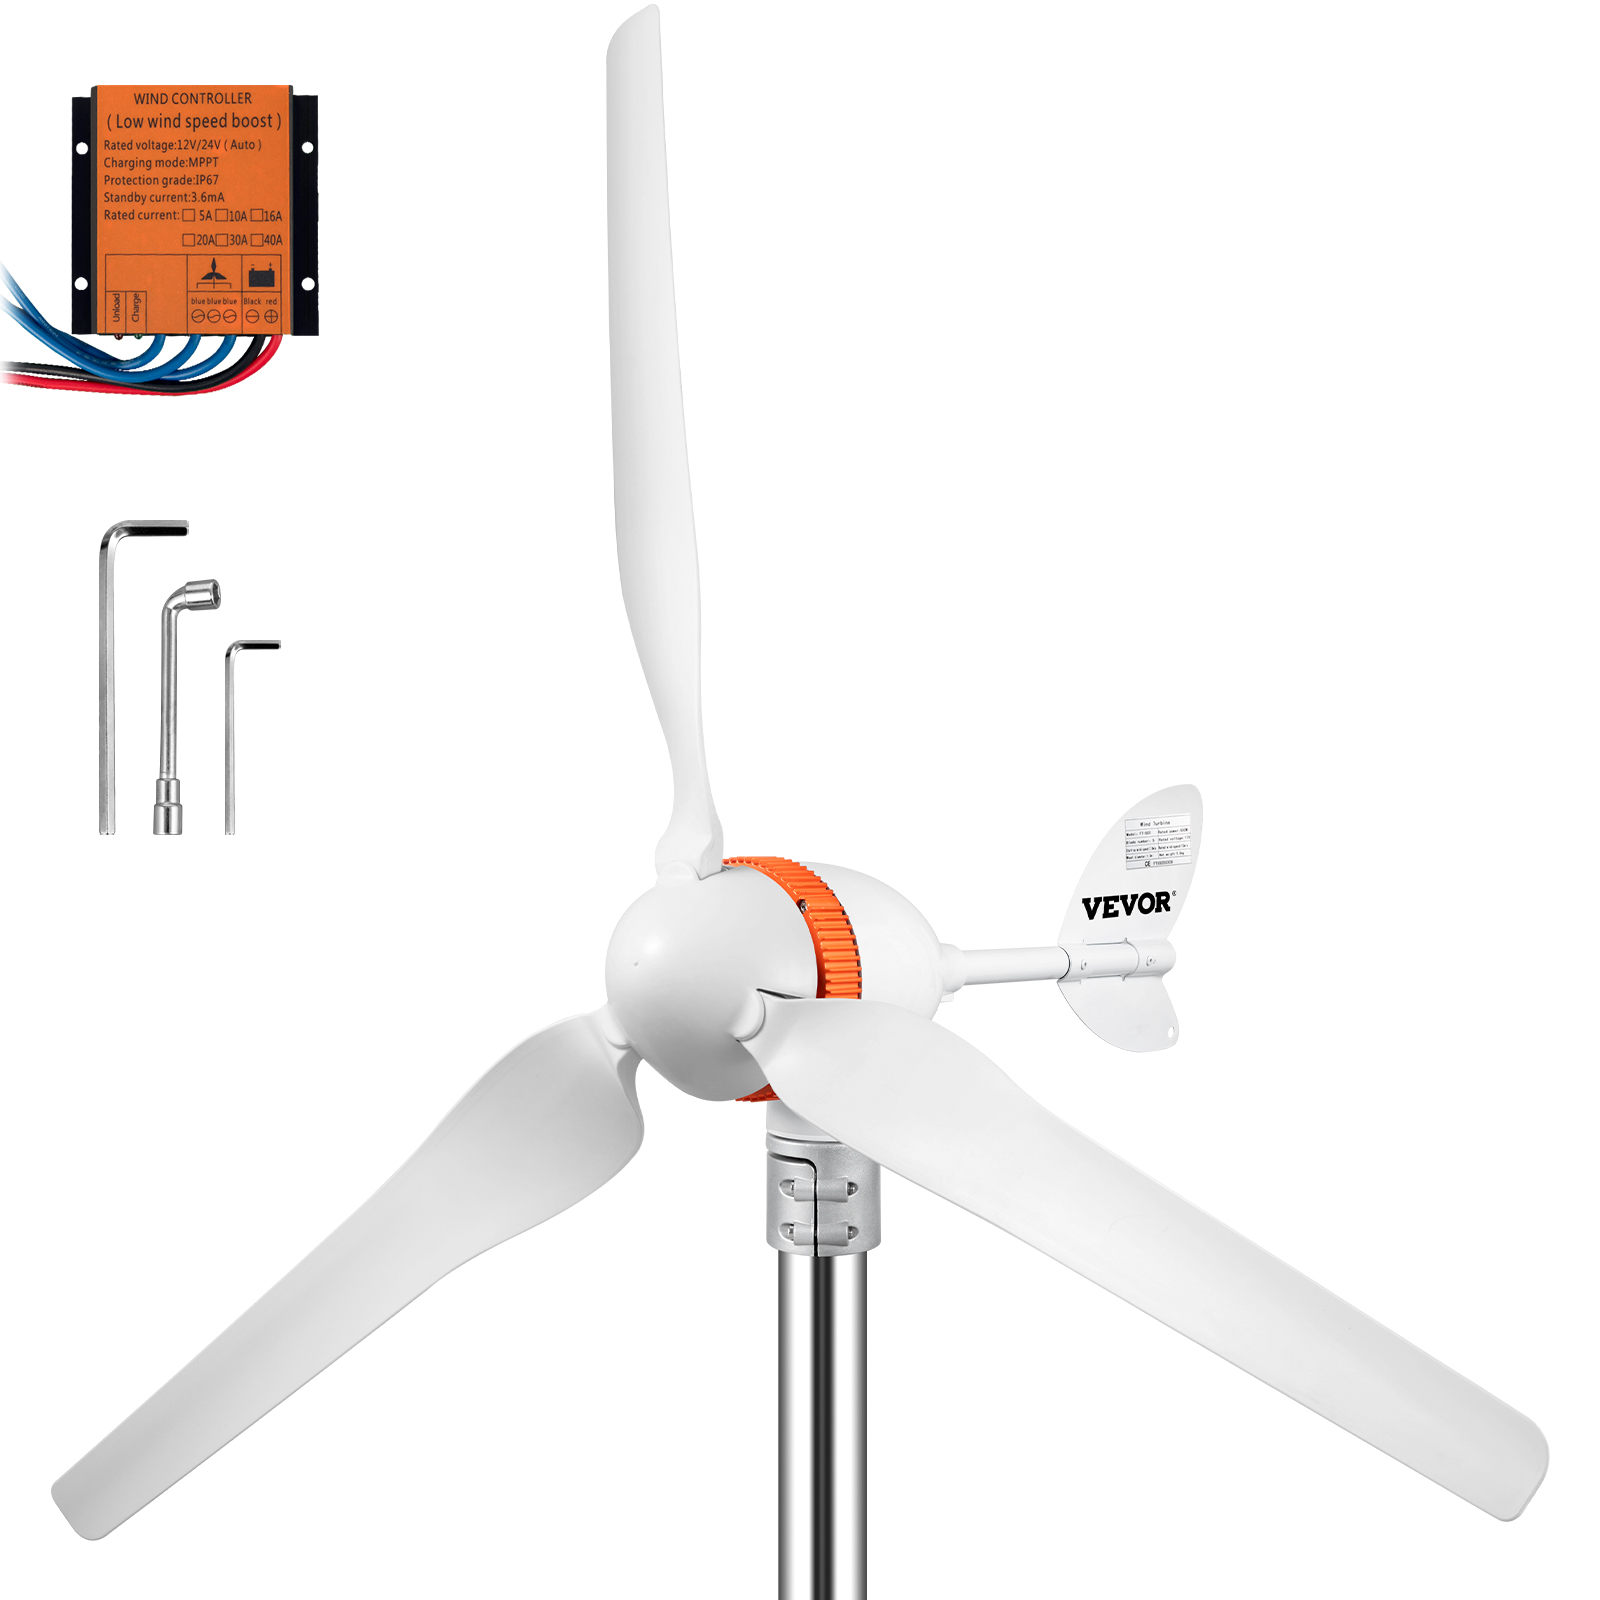 Générateur à Energie éolienne pour système 12 V / 300 W Eolienne